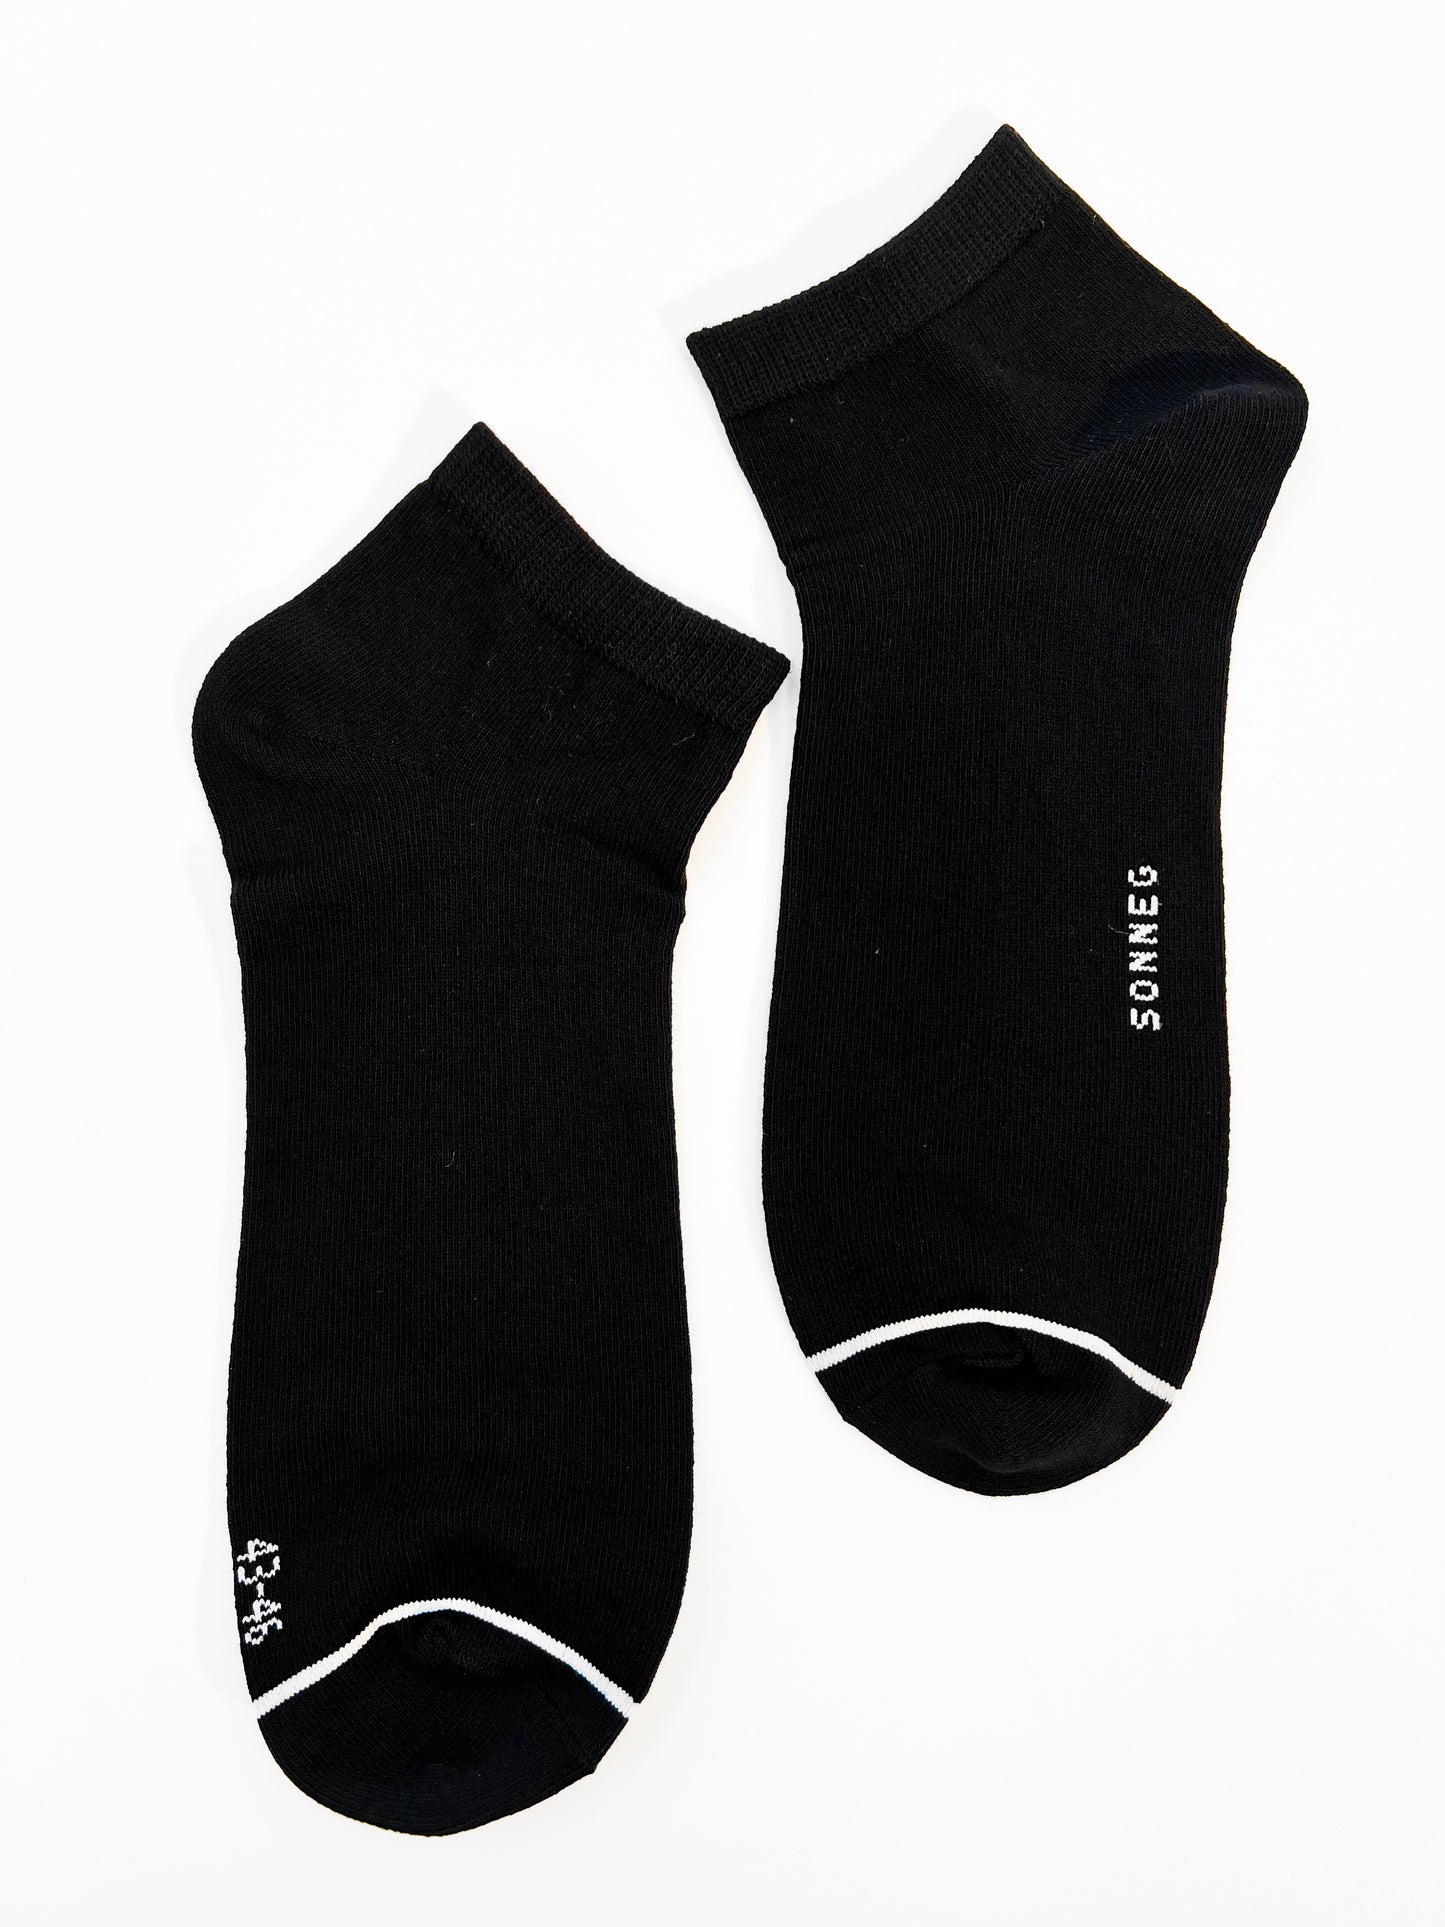 Chaussettes noires unisexes, mode, coupe basse - pack de 3 ou 6 paires